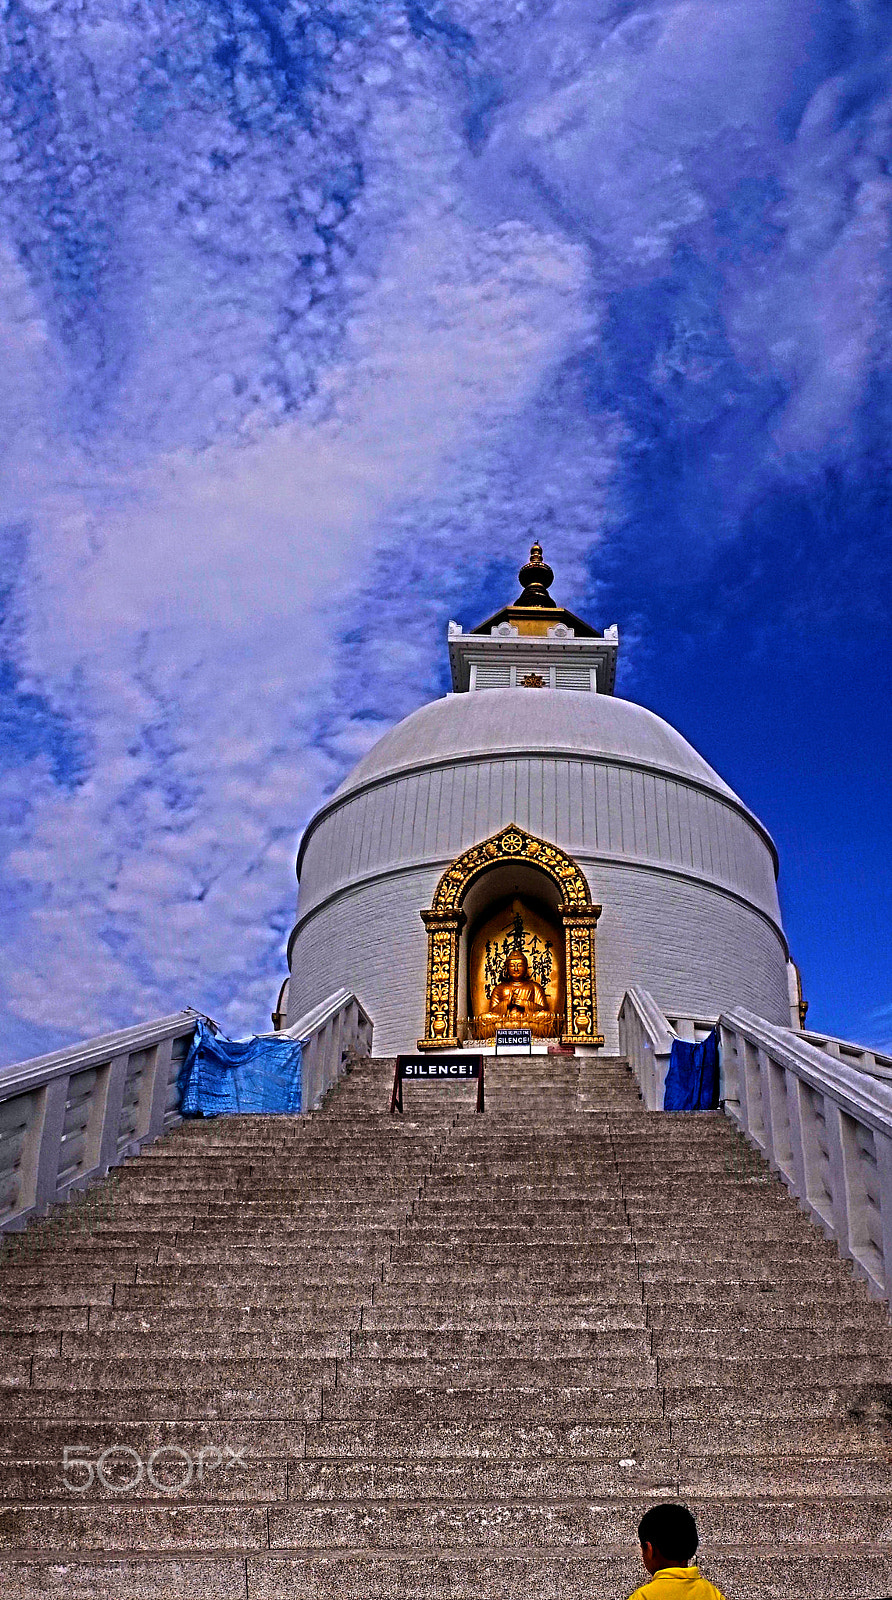 Sony a7 + Sony E 16mm F2.8 sample photo. The shanti stupa in pokhara, photography